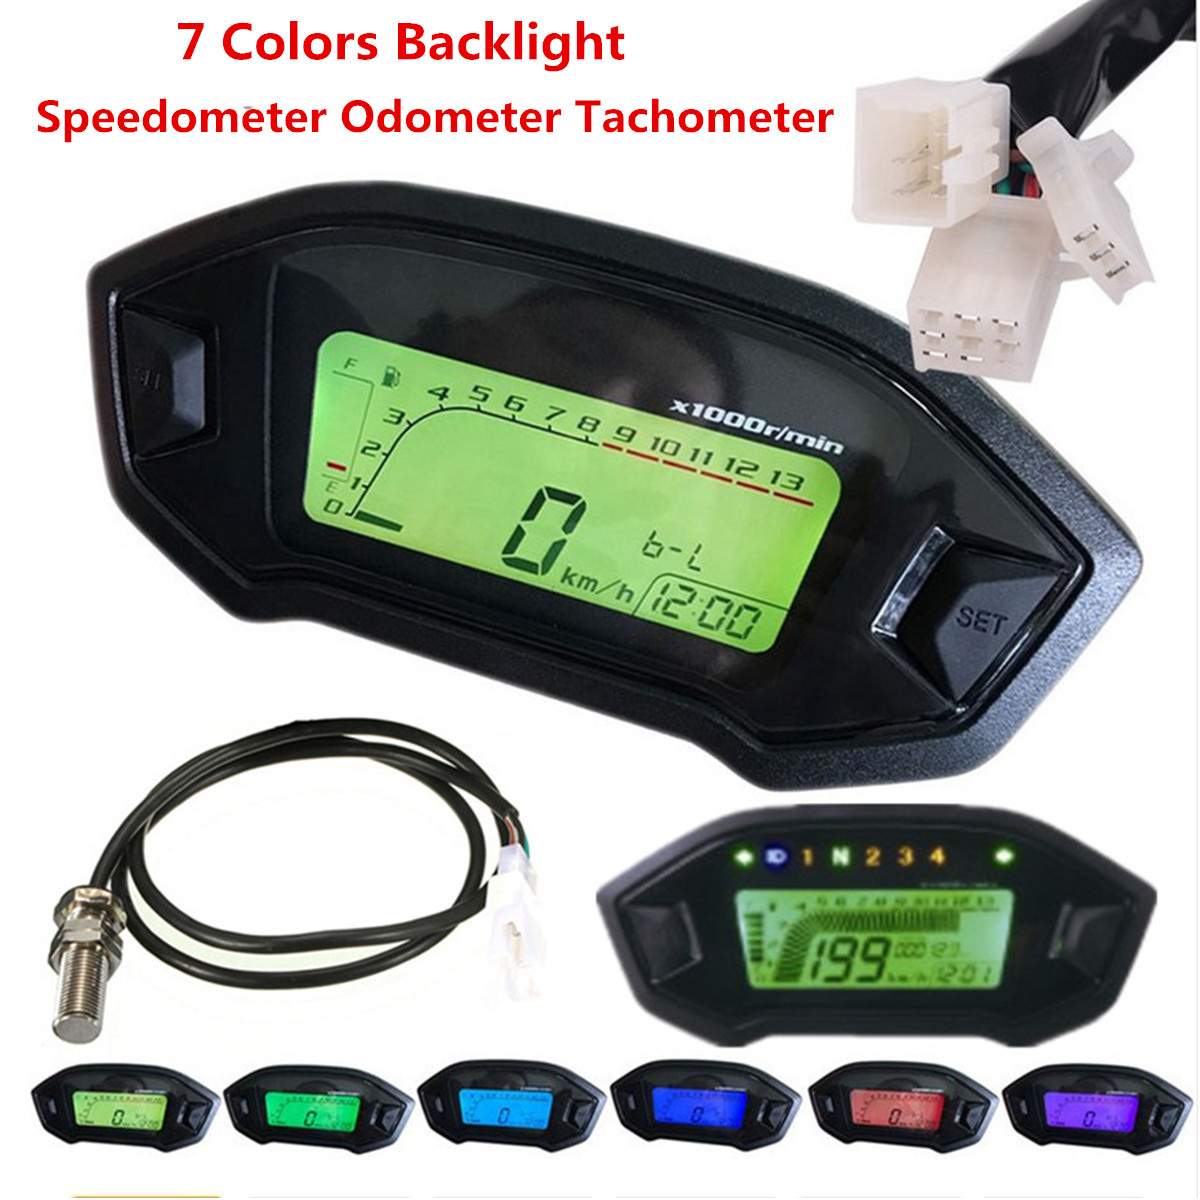 LCD Digital Motorcycle Odometer SpeedometerTachometer Gauge Backlight Instrument